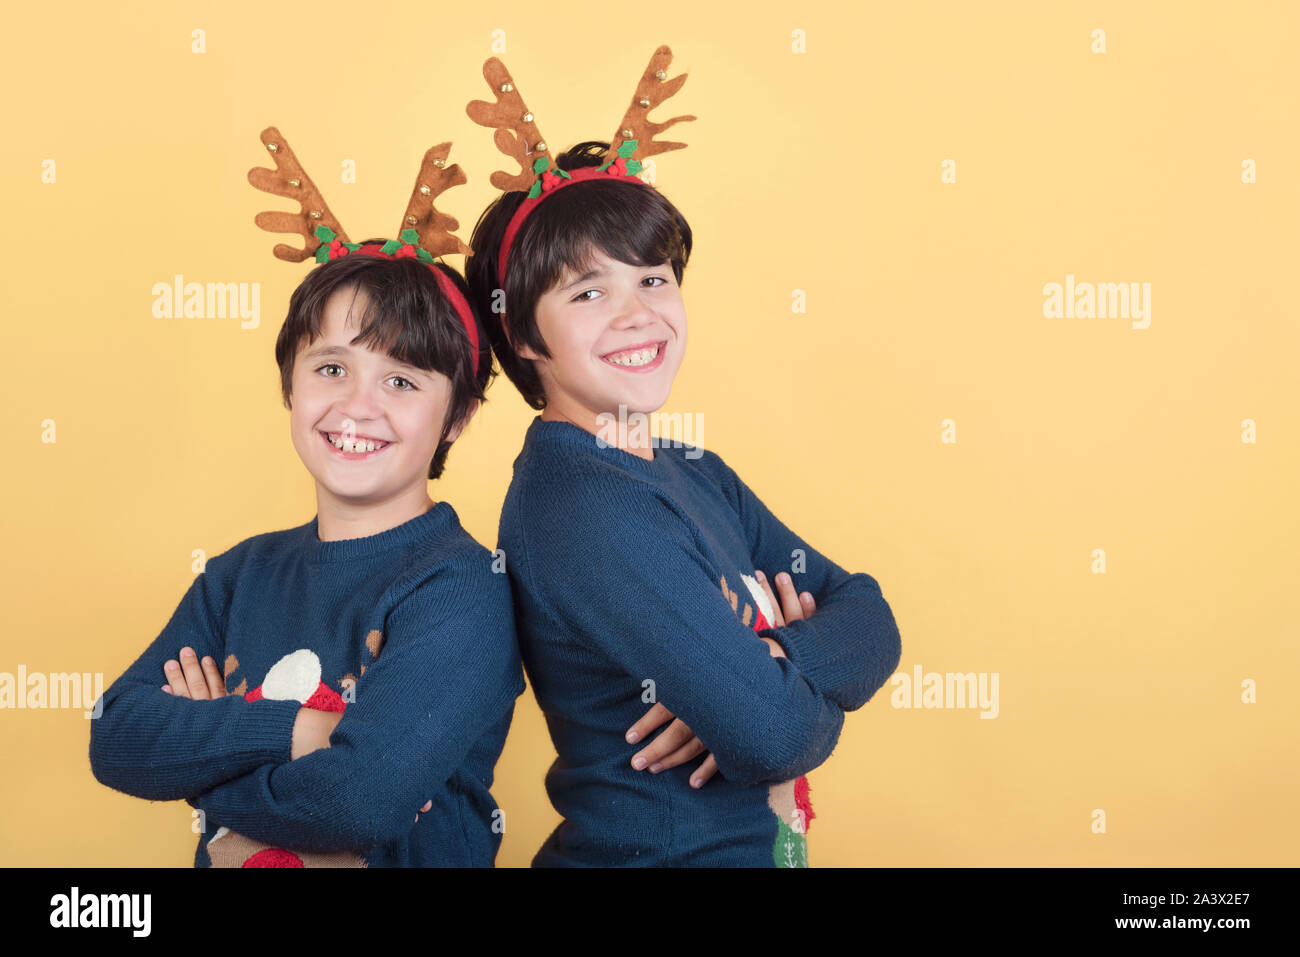 Smiling Children dans un costume de noël Renne Rudolph sur fond jaune Banque D'Images